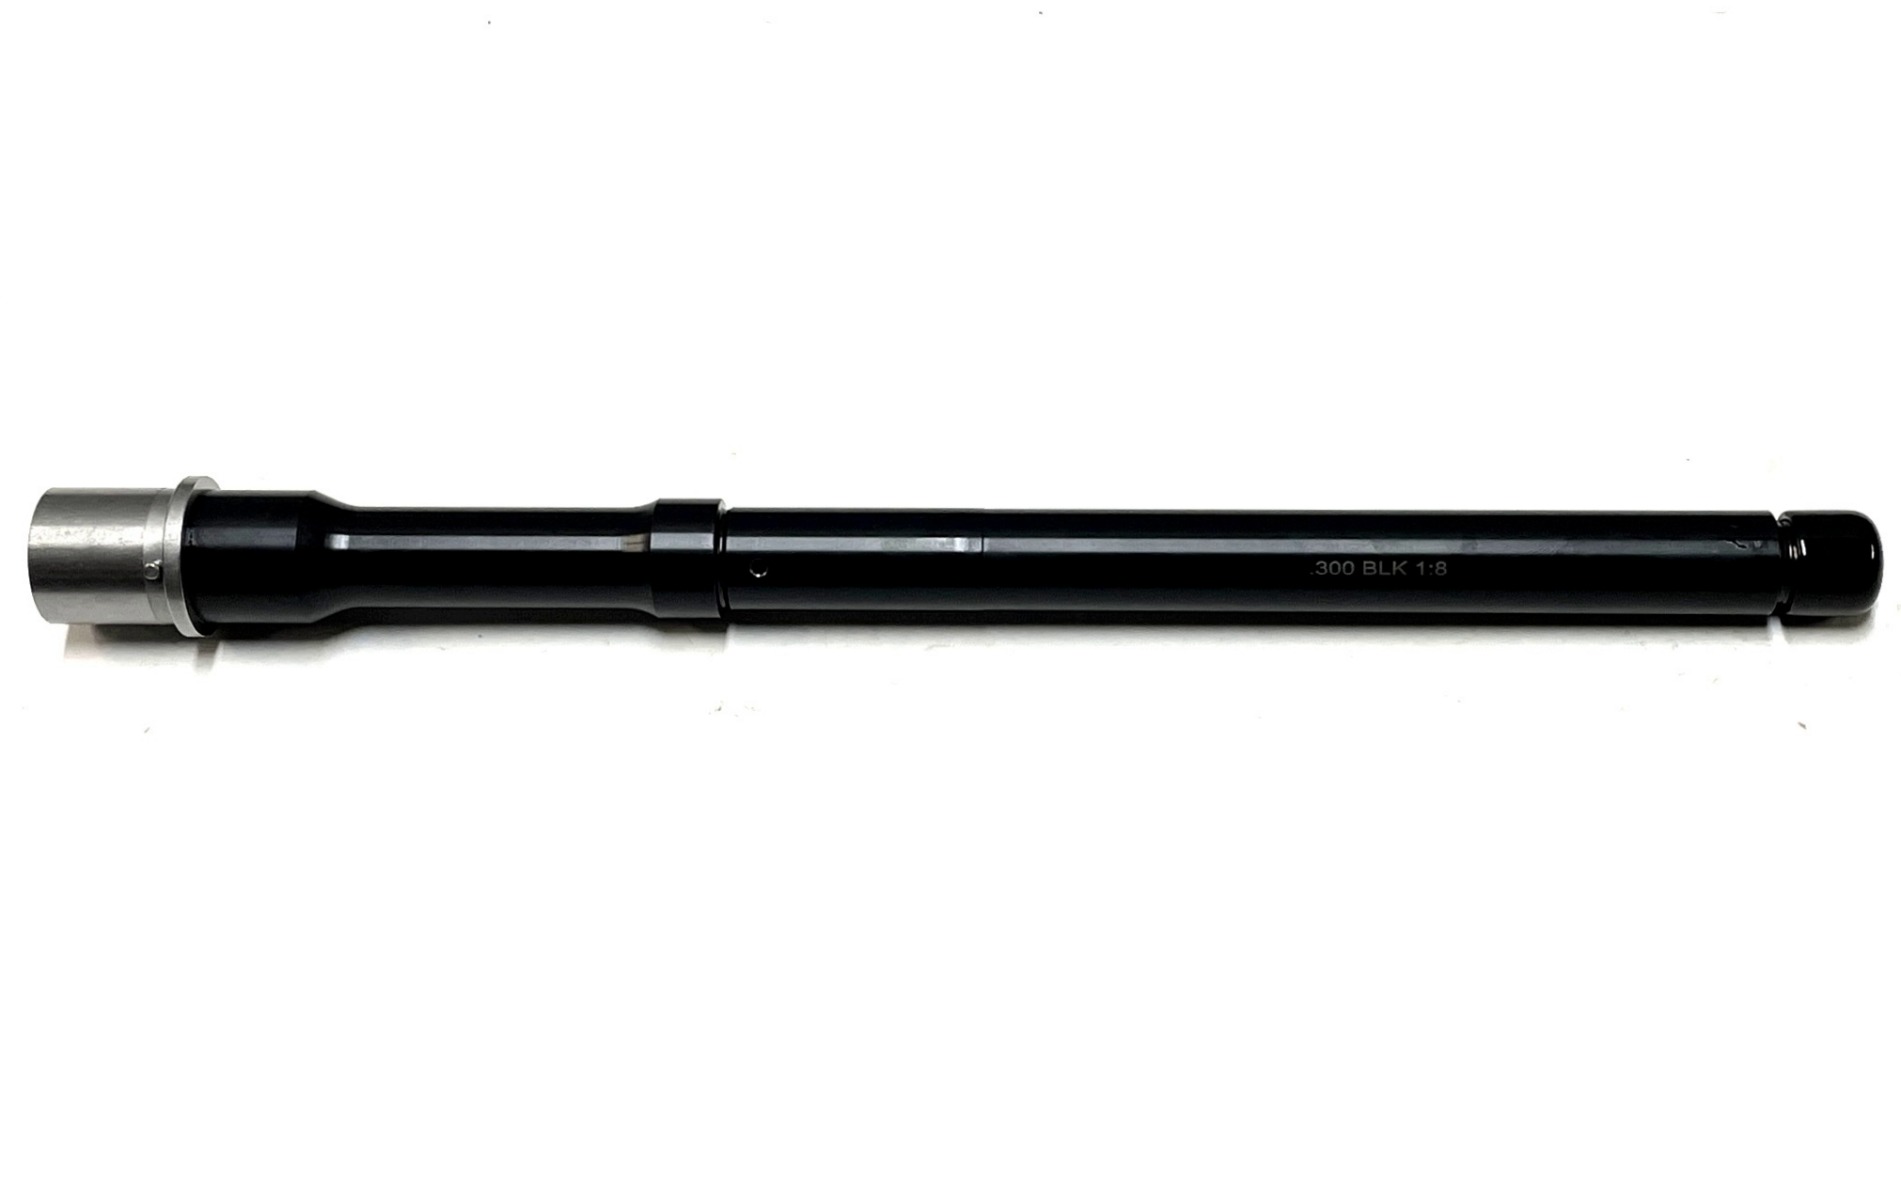 Tactical Kinetics 12.5 inch AR-15 300 Blackout Melonite Barrel